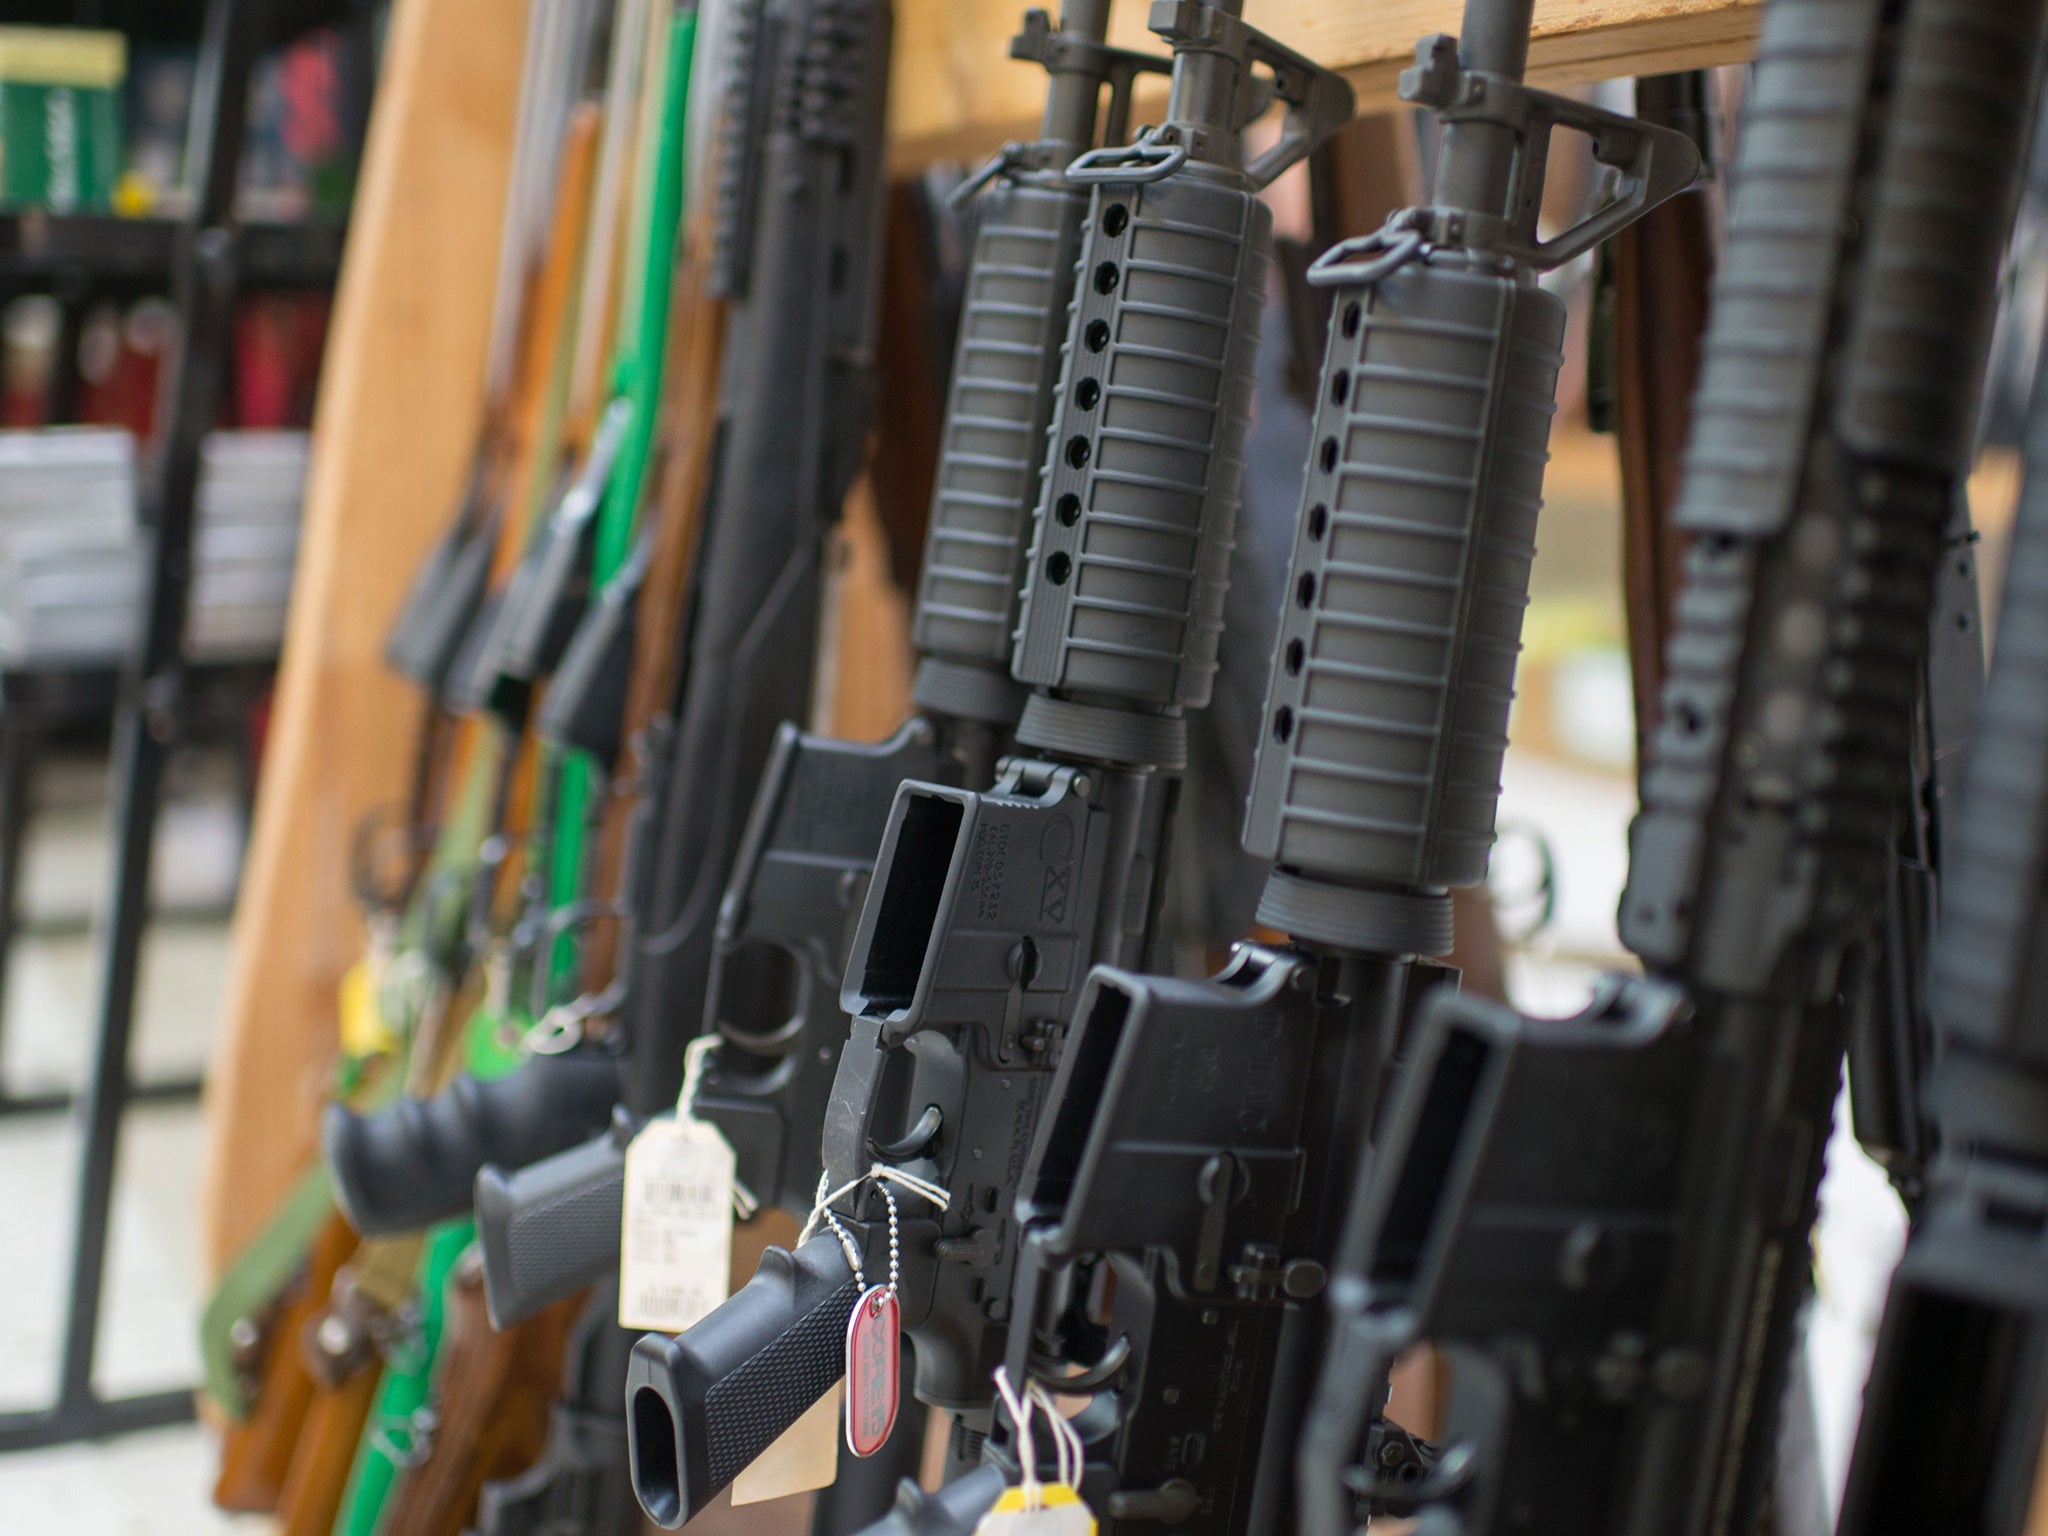 Guns are on display at Roseburg Gun Shop in Roseburg, Oregon